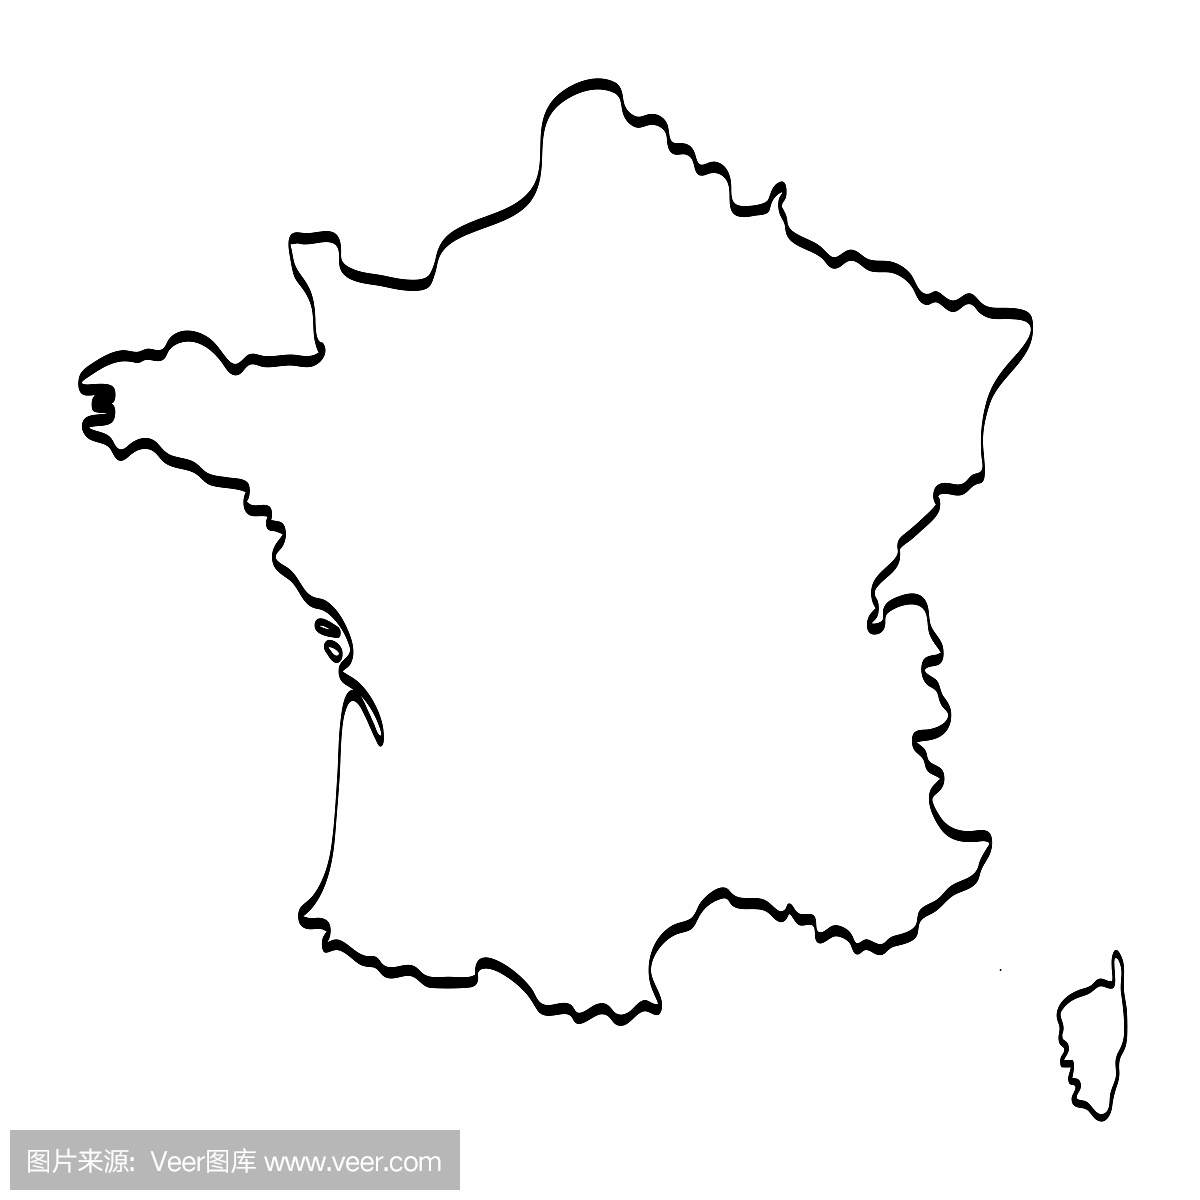 法国地图轮廓图形徒手画在白色背景上。矢量图